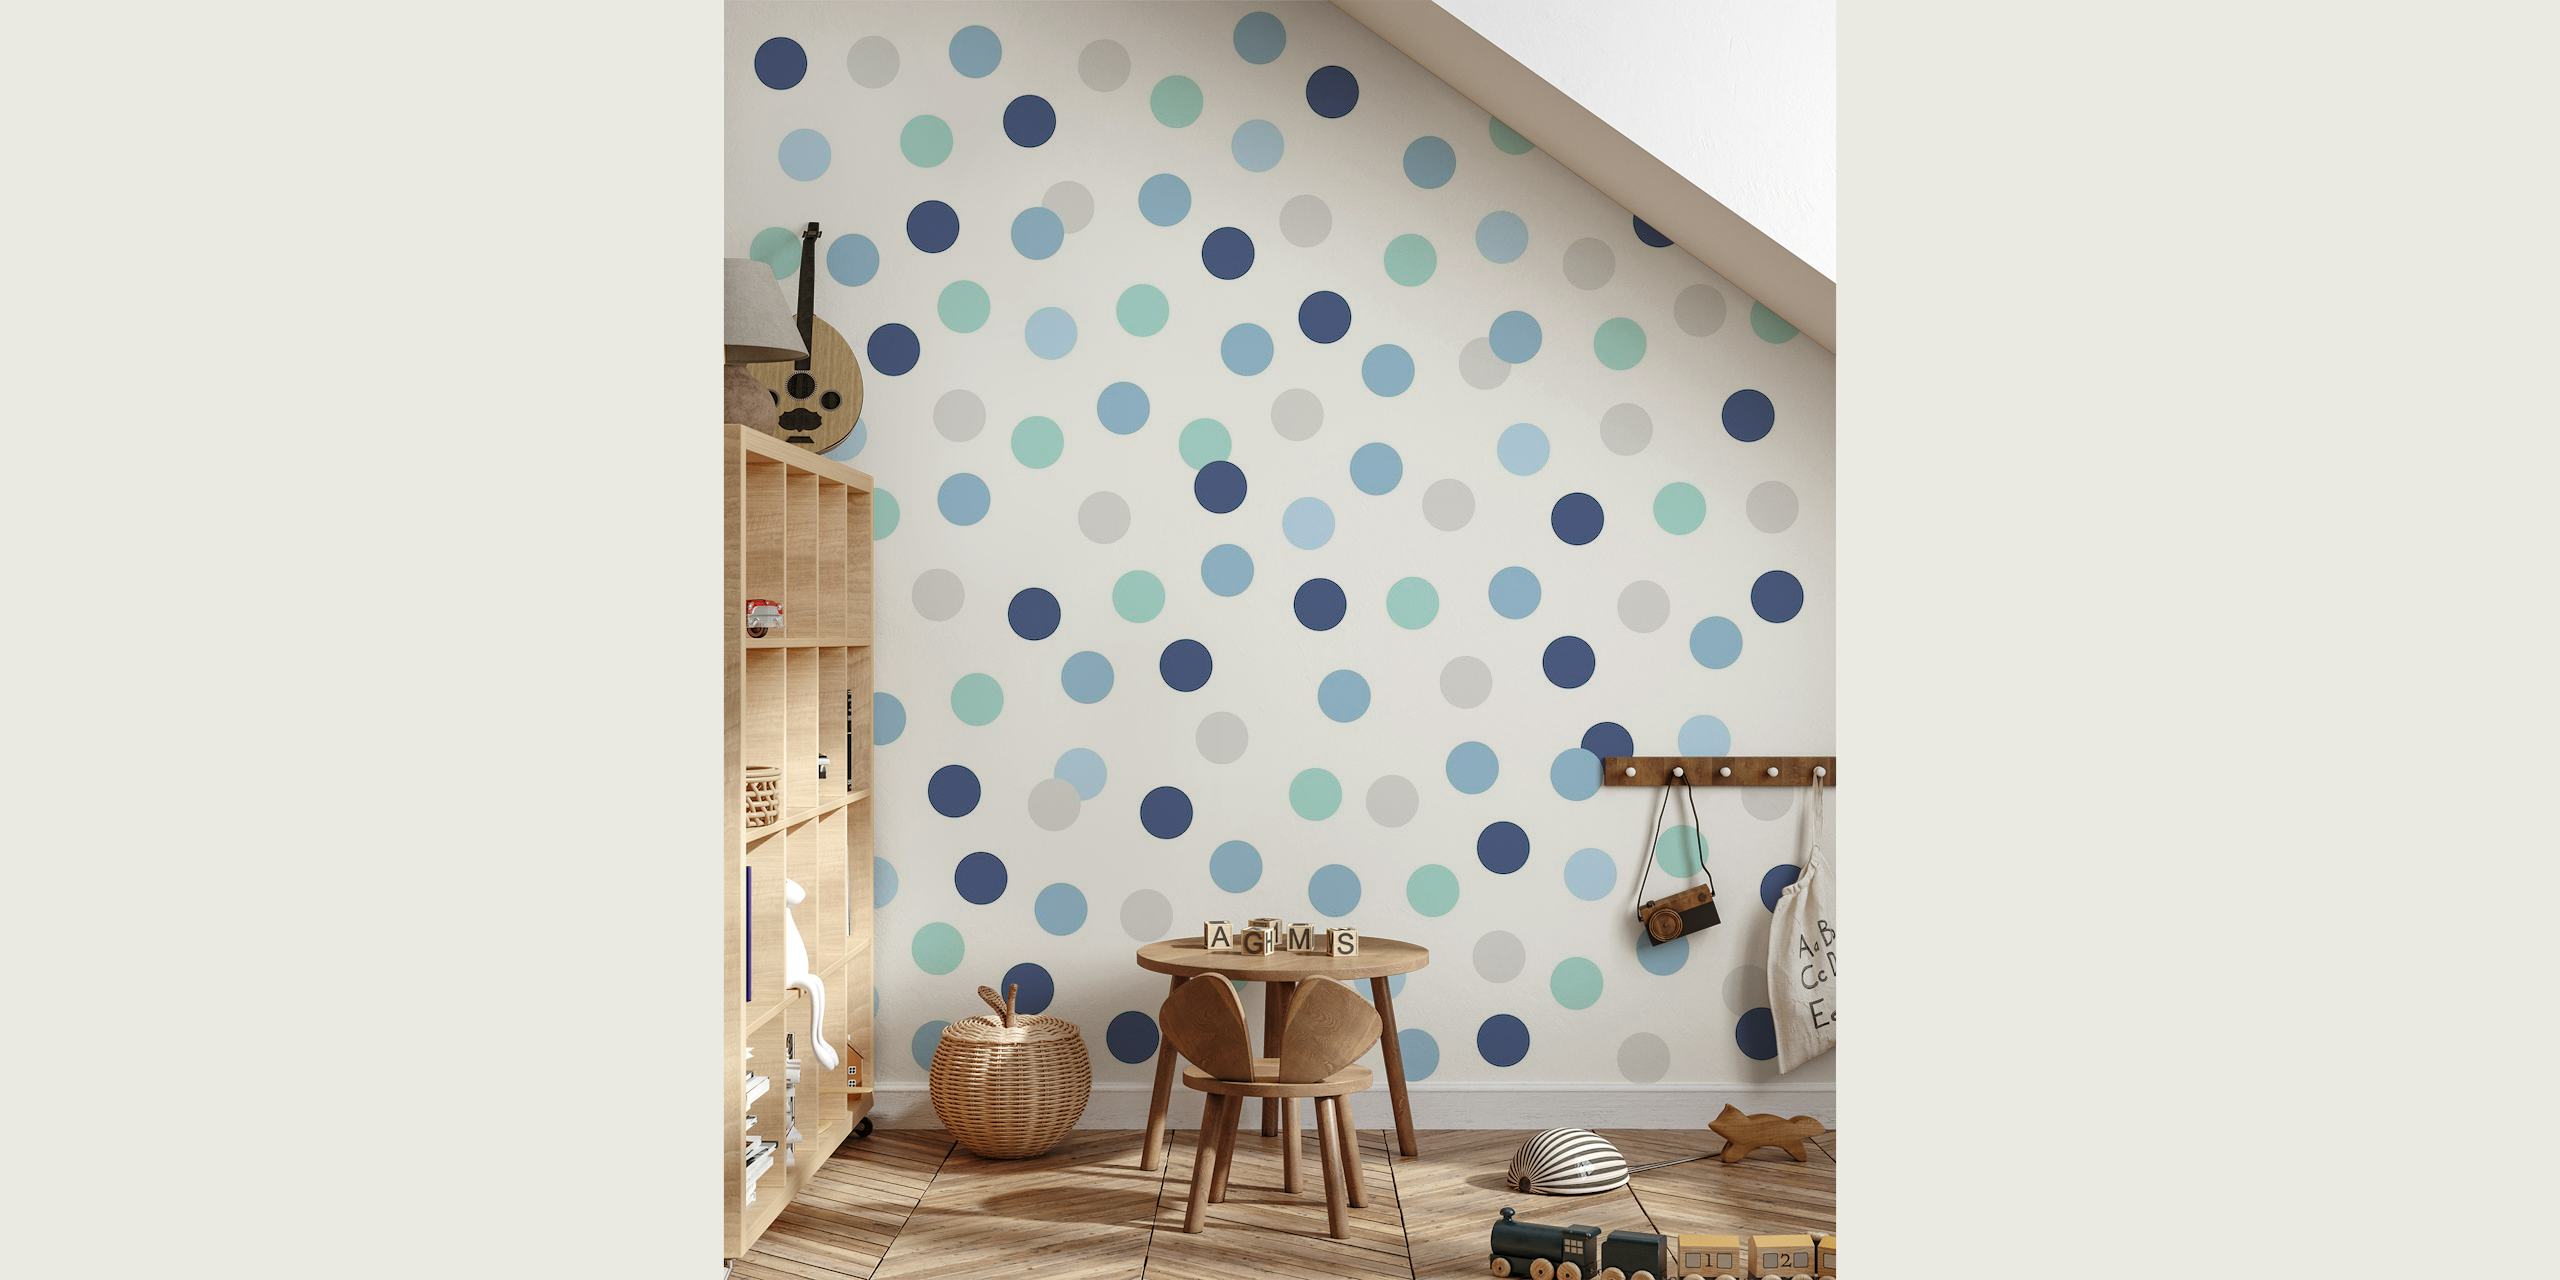 Mural de parede Blue Polkadots com diferentes tons de pontos azuis em um fundo branco